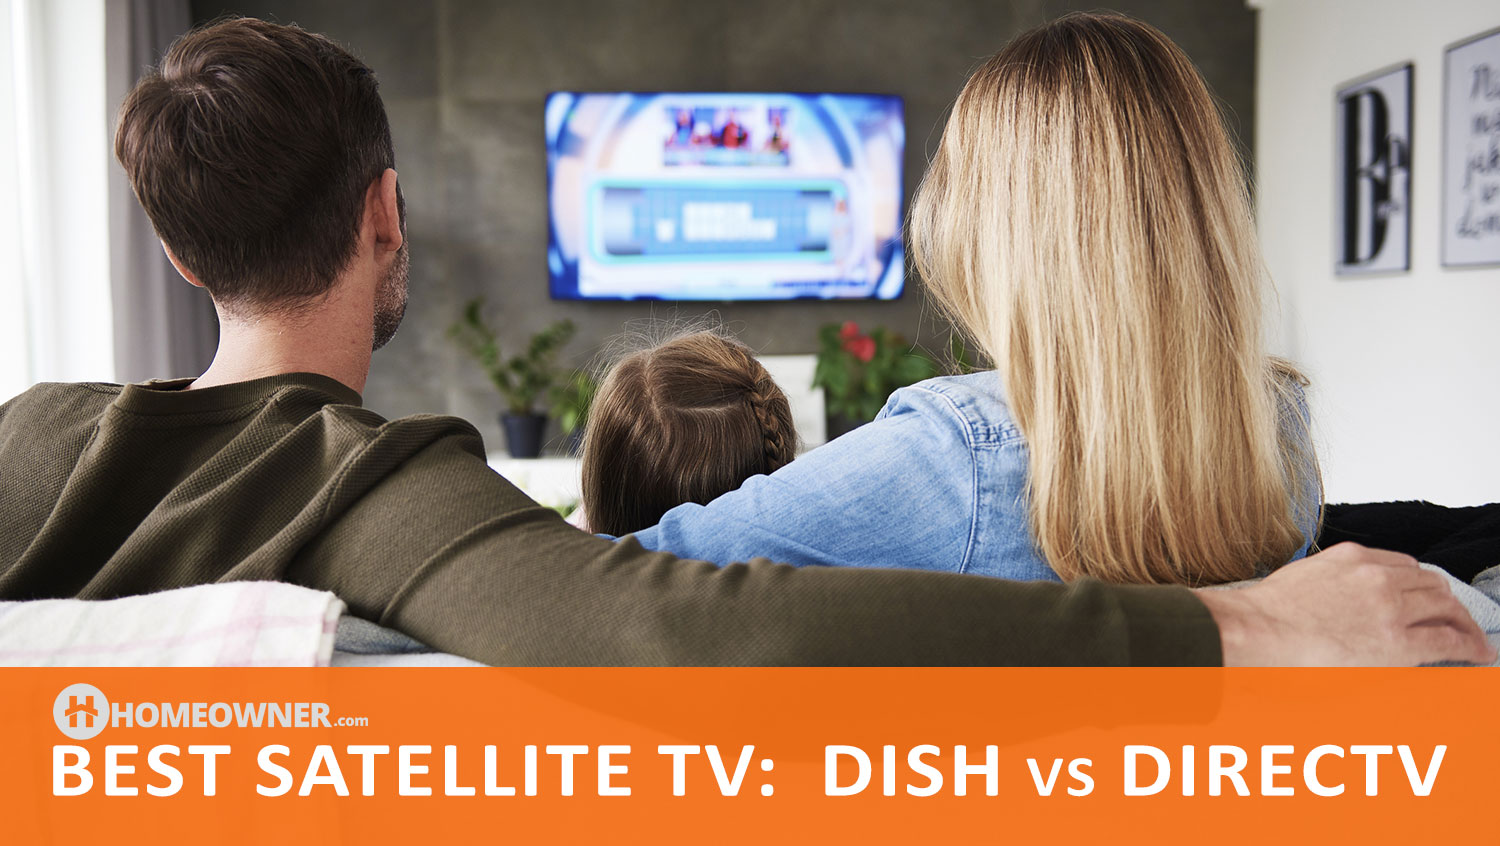 Best Satellite TV in 2023: DISH vs DIRECTV